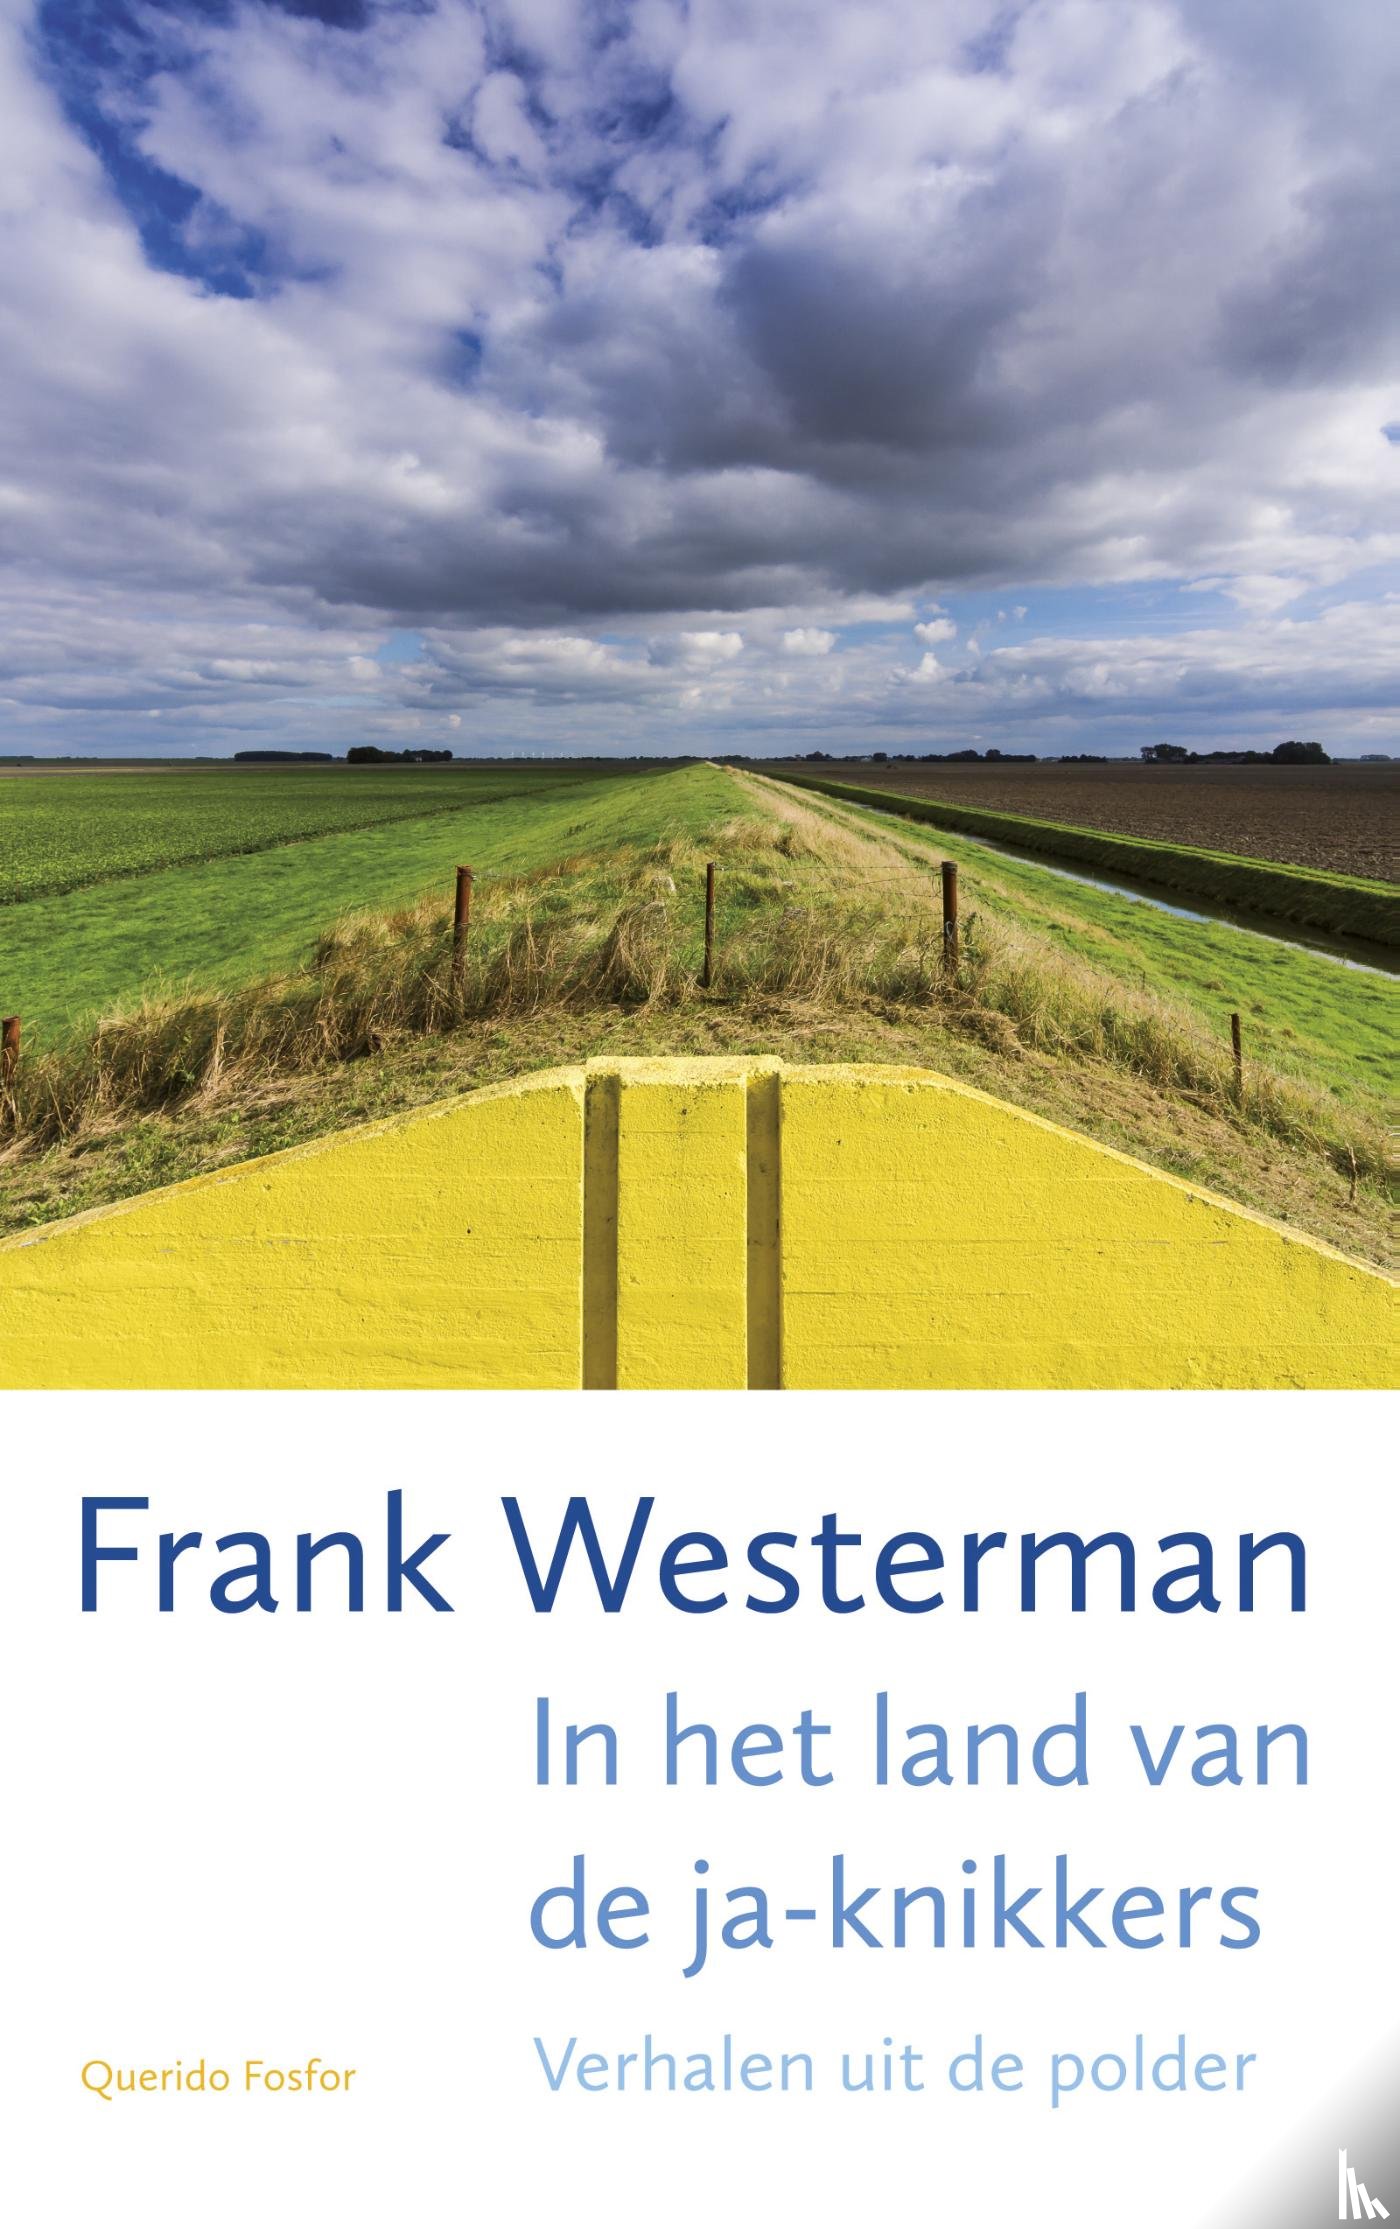 Westerman, Frank - In het land van de ja-knikkers - verhalen uit de polder